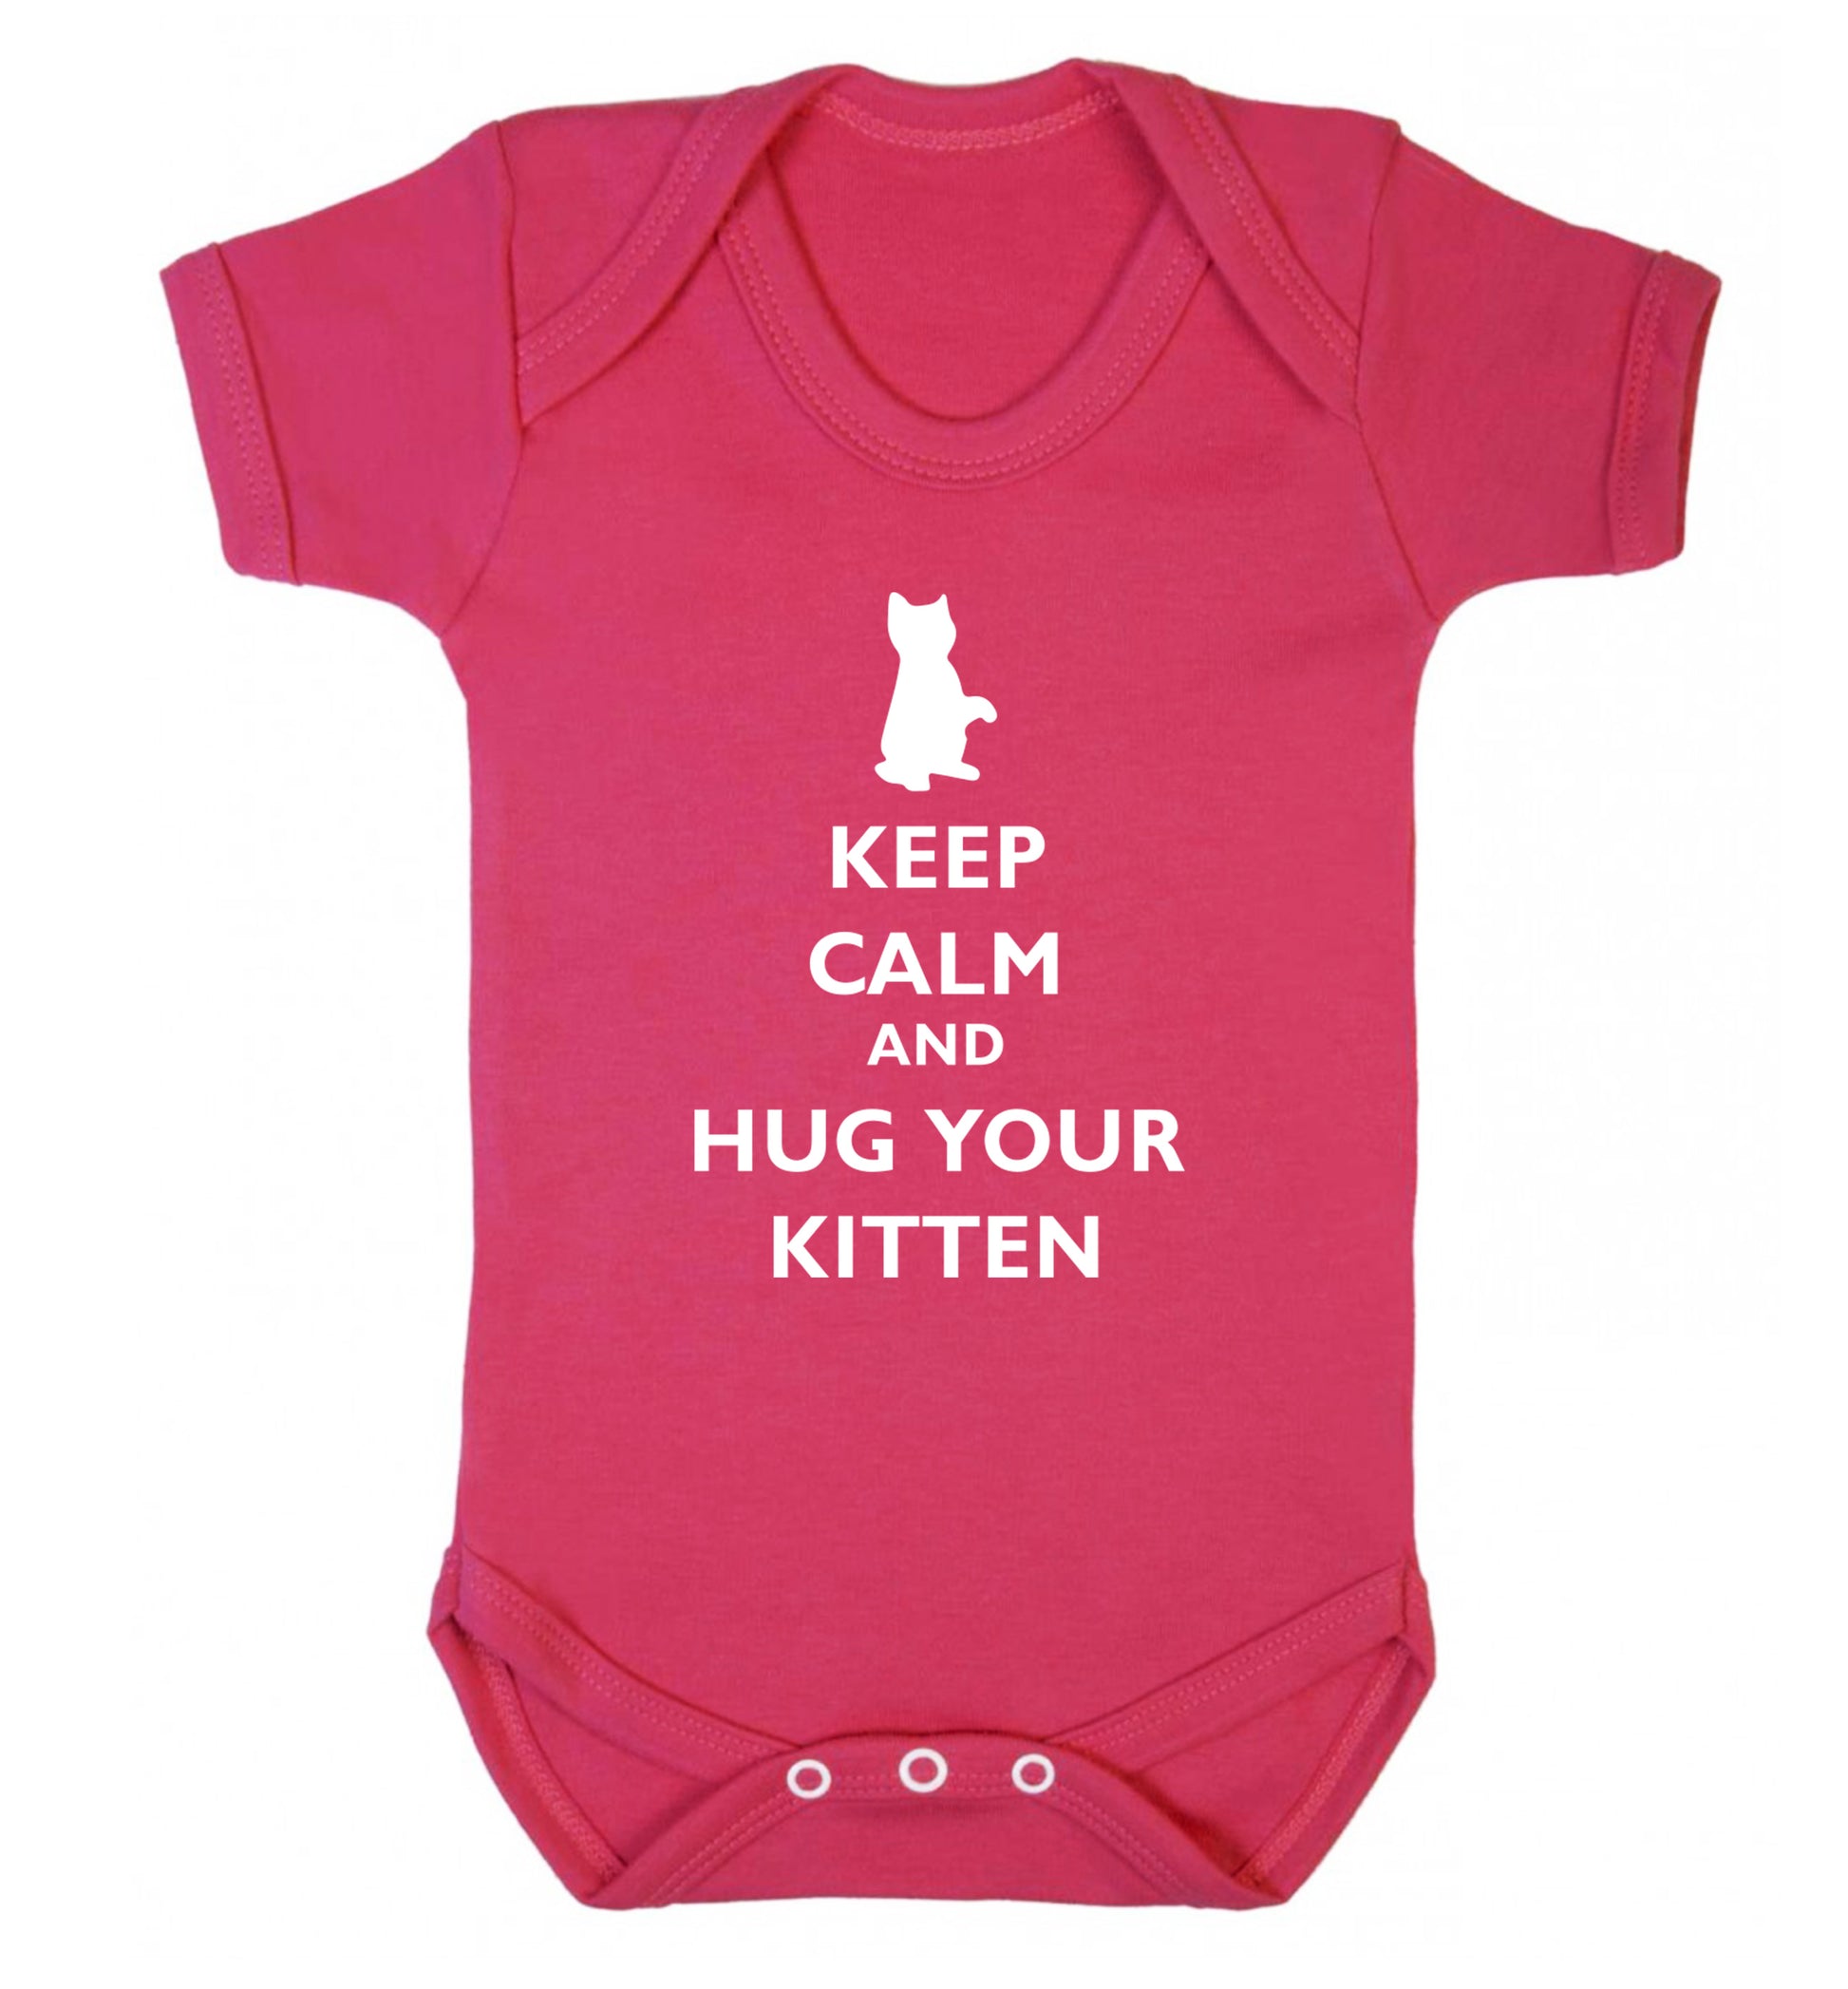 Keep calm and hug your kitten Baby Vest dark pink 18-24 months